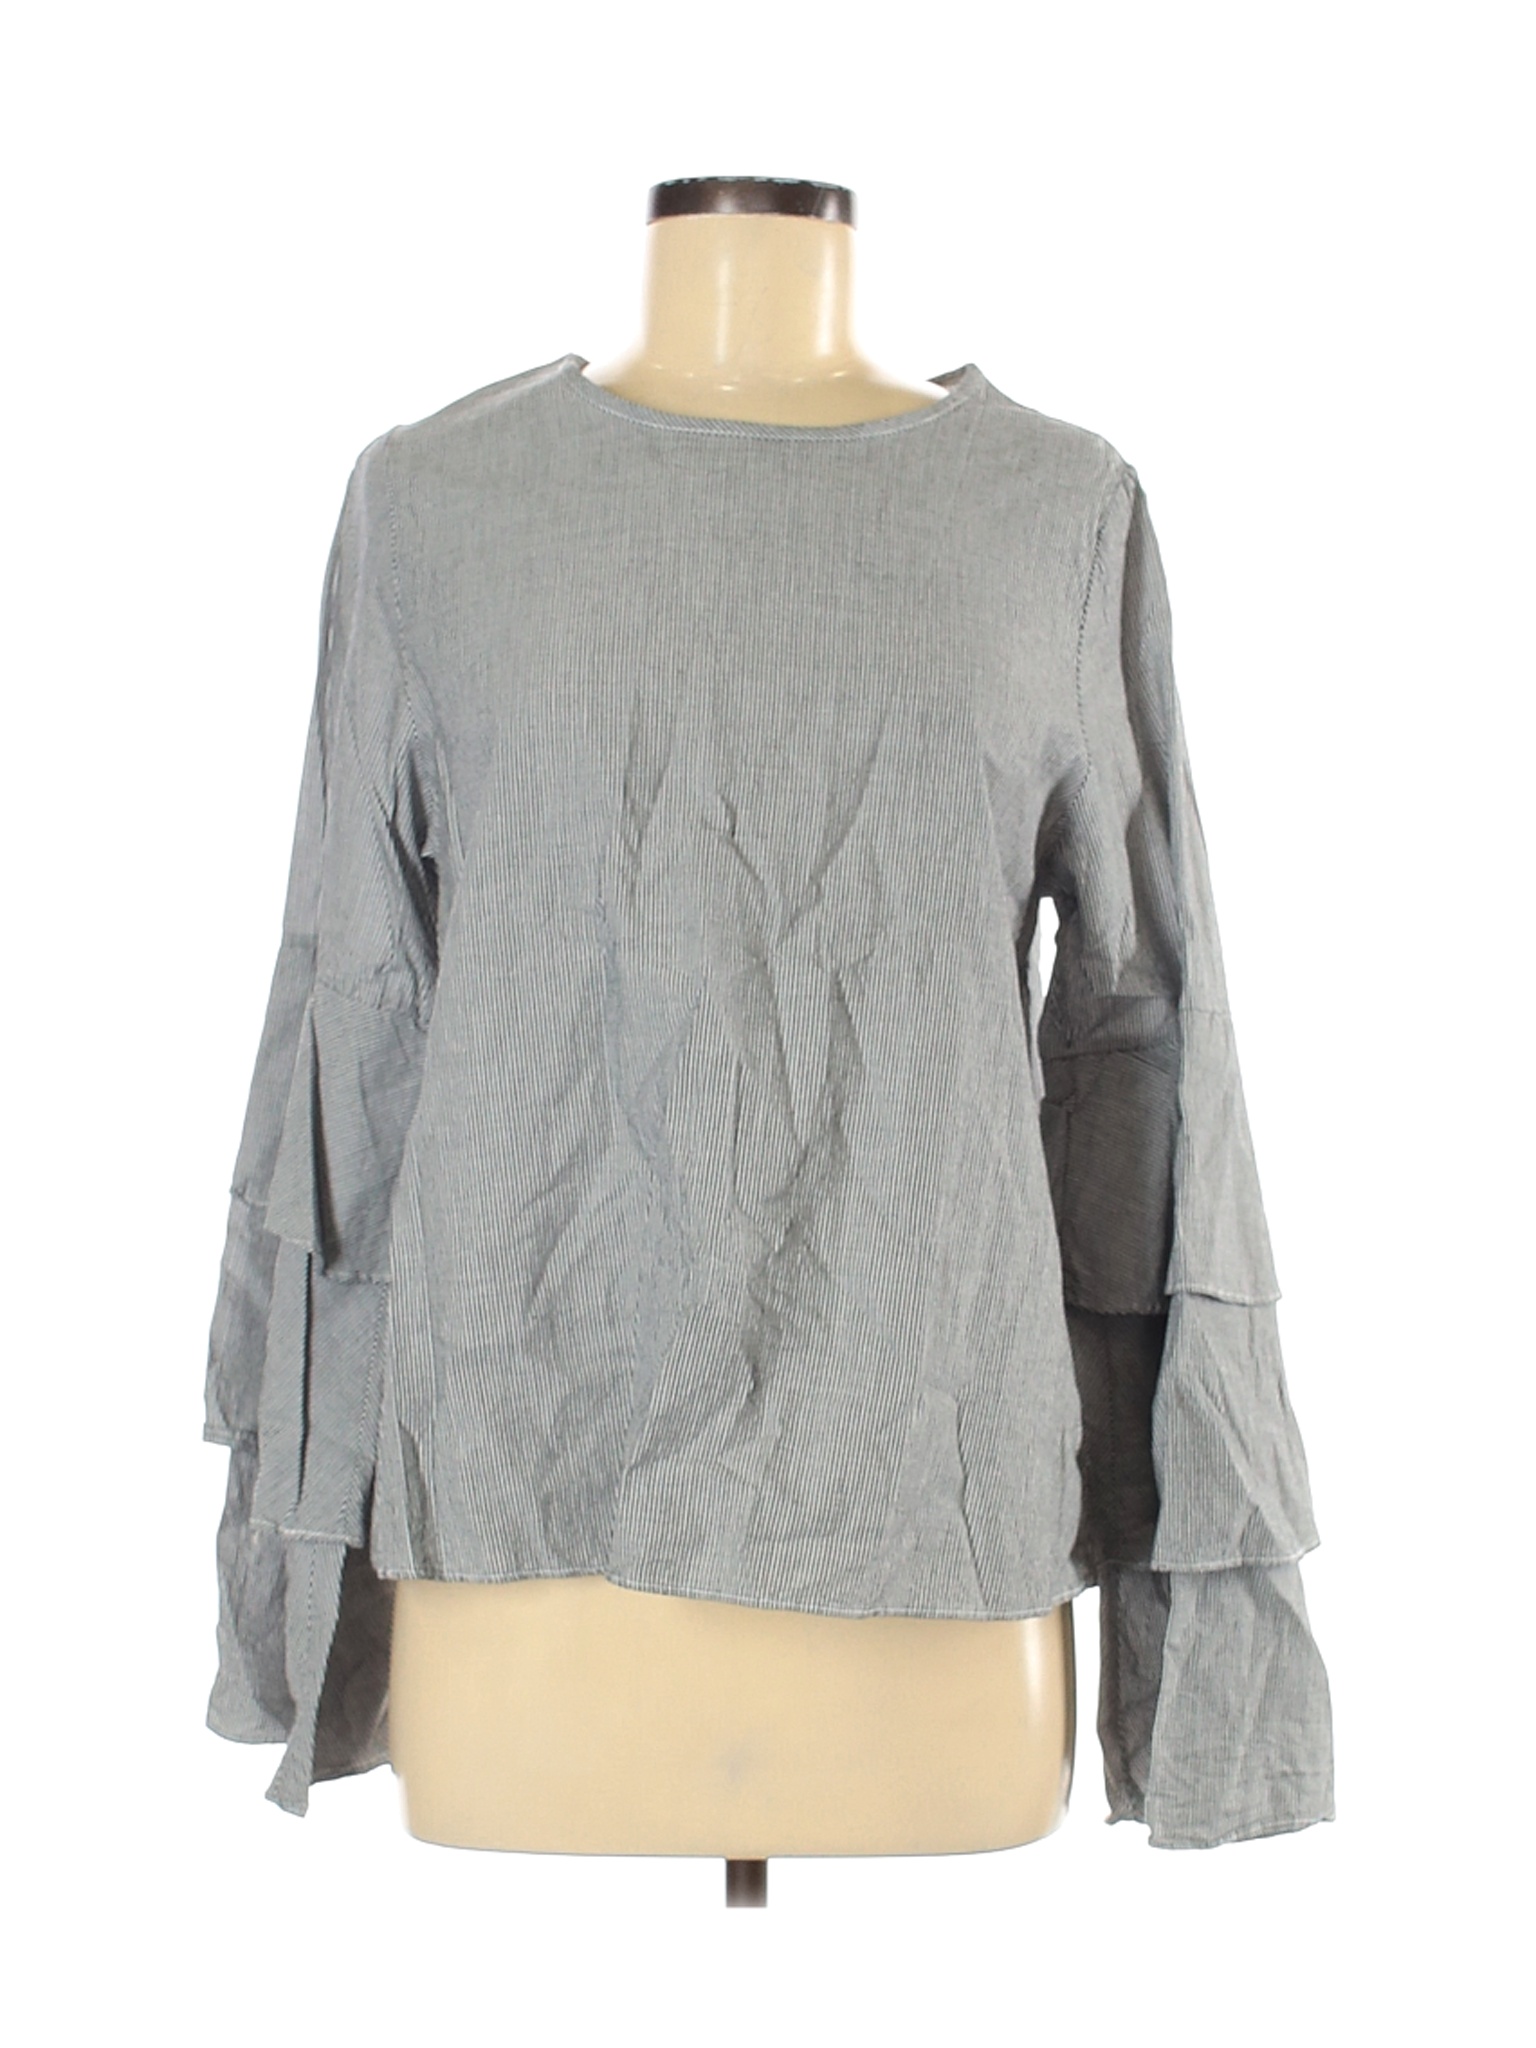 Newbury Kustom Women Gray Long Sleeve Blouse M | eBay